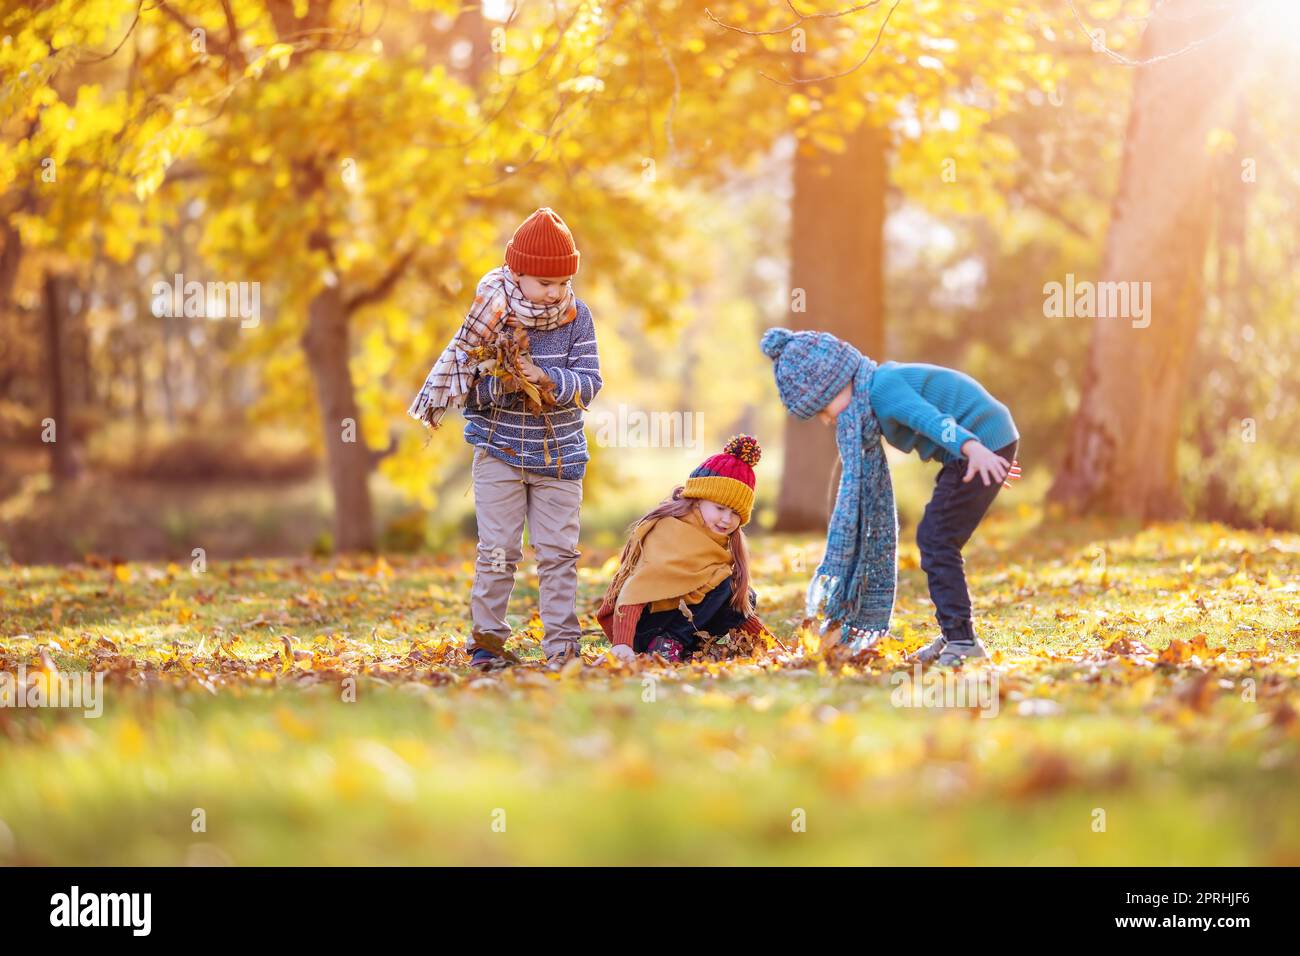 Kinder spielen am Herbsttag im farbenfrohen Naturpark zusammen Stockfoto